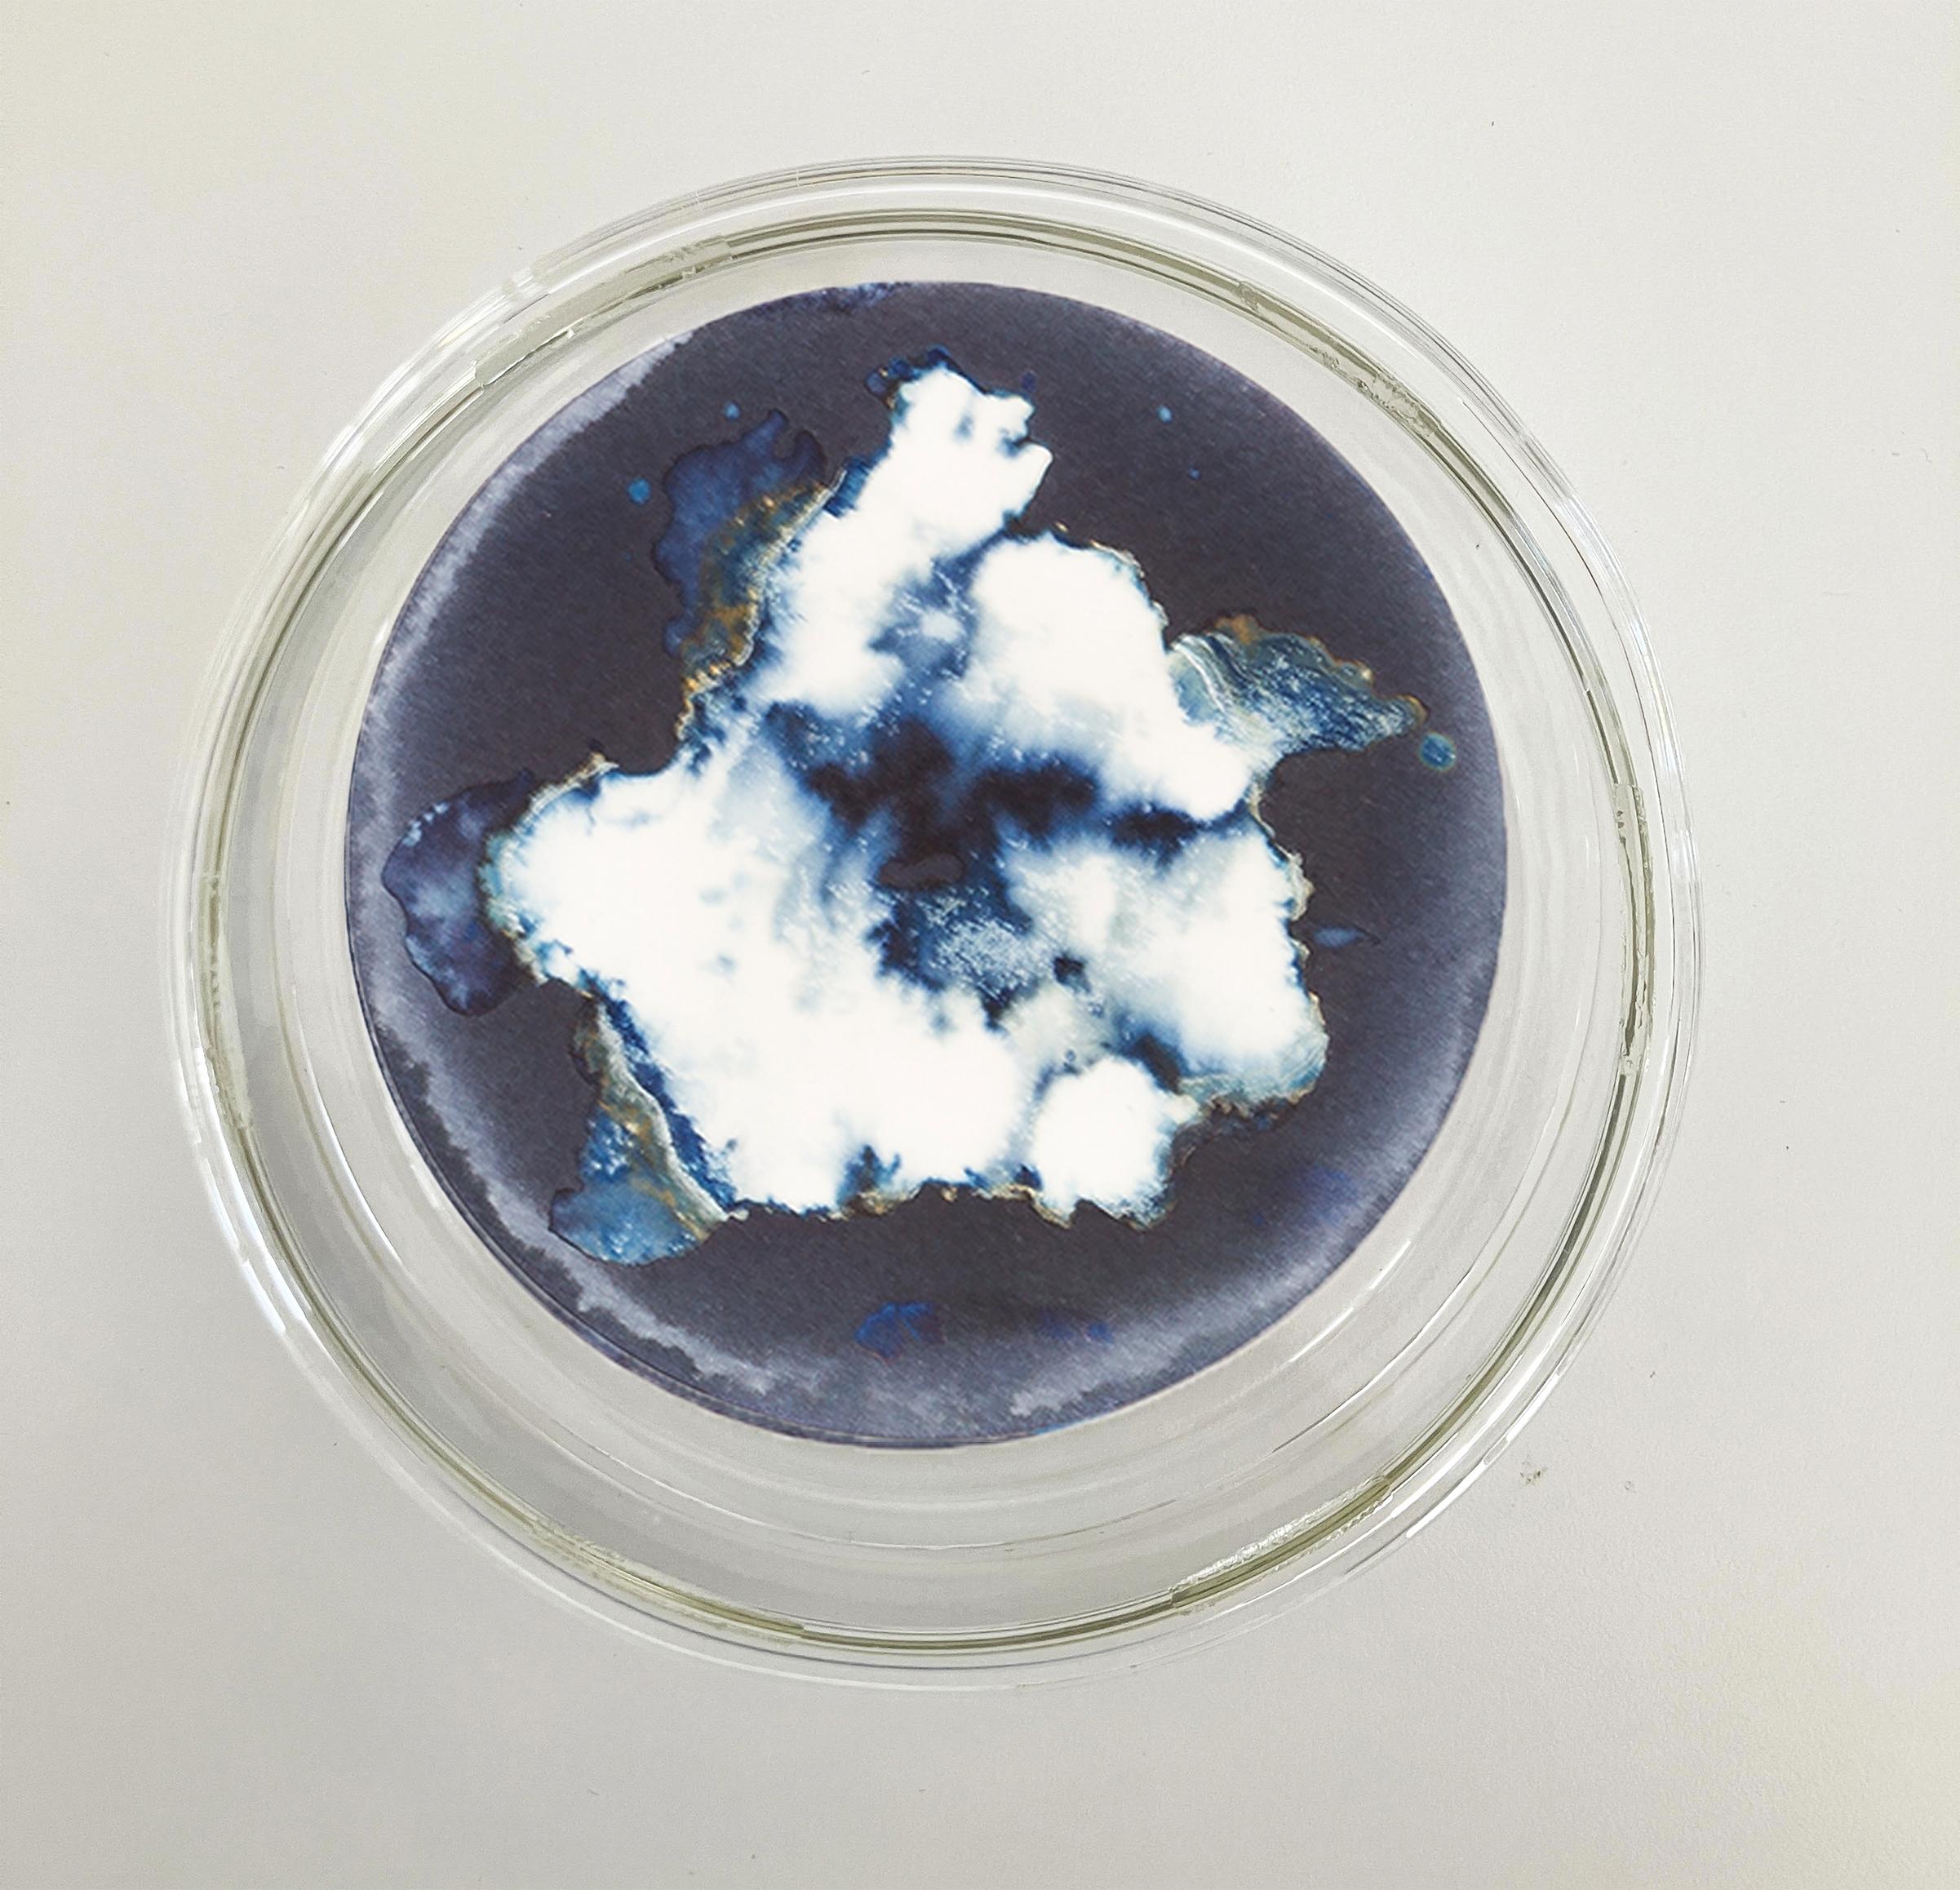 Esponjas 8, 11 und 16. Cyanotypie-Fotografien, montiert in einer hochfesten Glasschale (Grau), Still-Life Sculpture, von Paola Davila